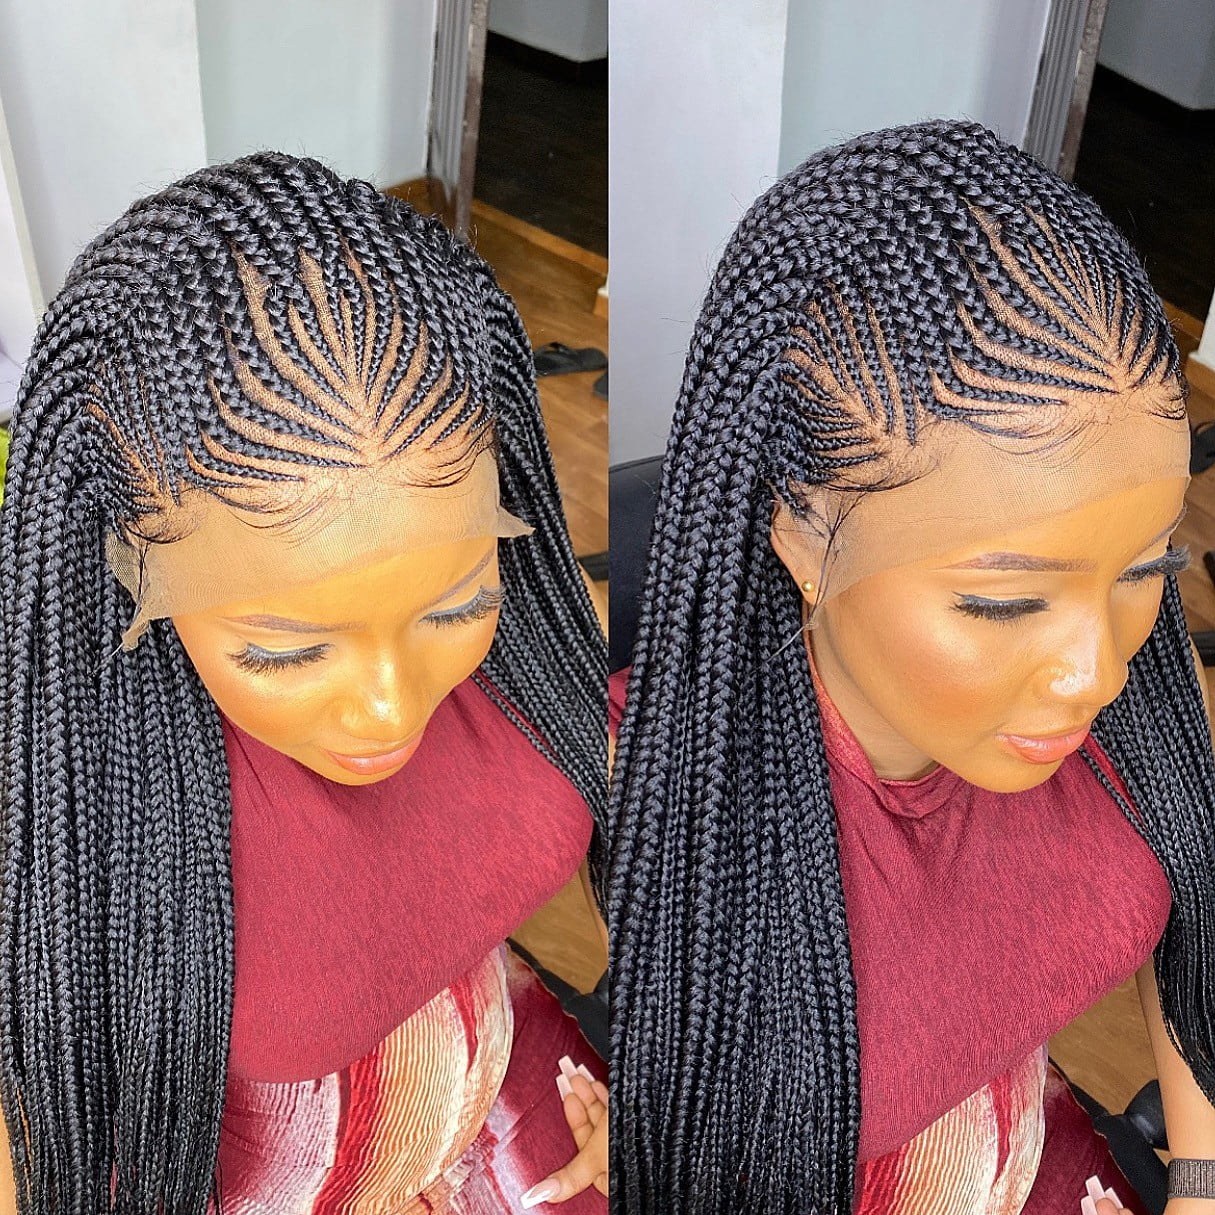 DWIGSHOPNG – No1 Braided Wig Company in Nigeria